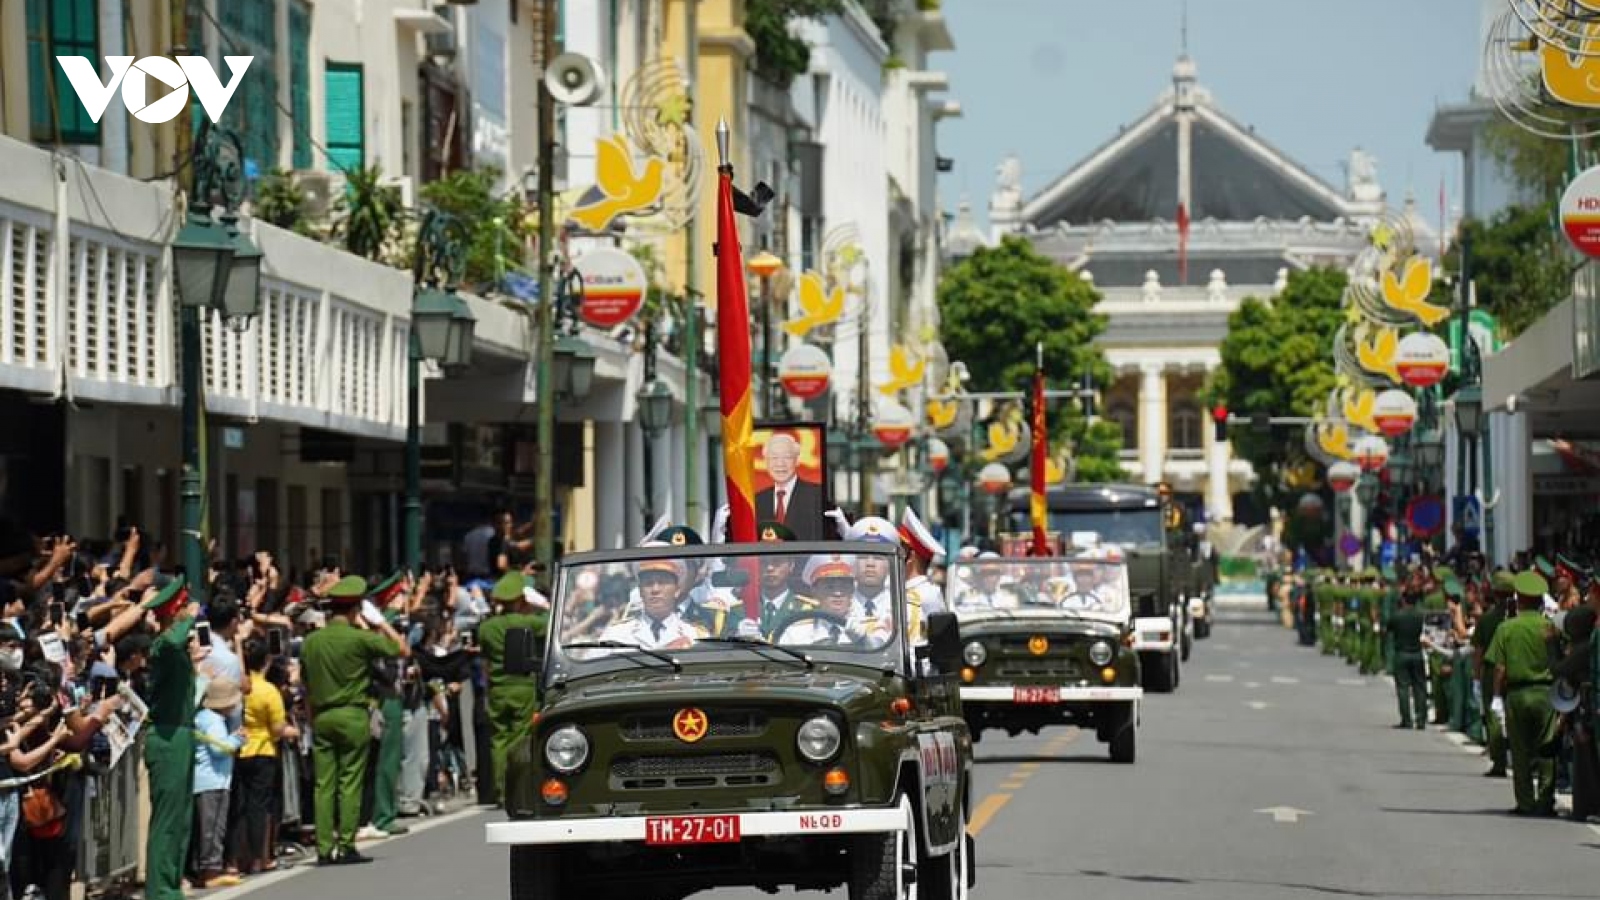 Thủ đô Hà Nội: Người dân xúc động tiễn biệt Tổng Bí thư Nguyễn Phú Trọng lần cuối